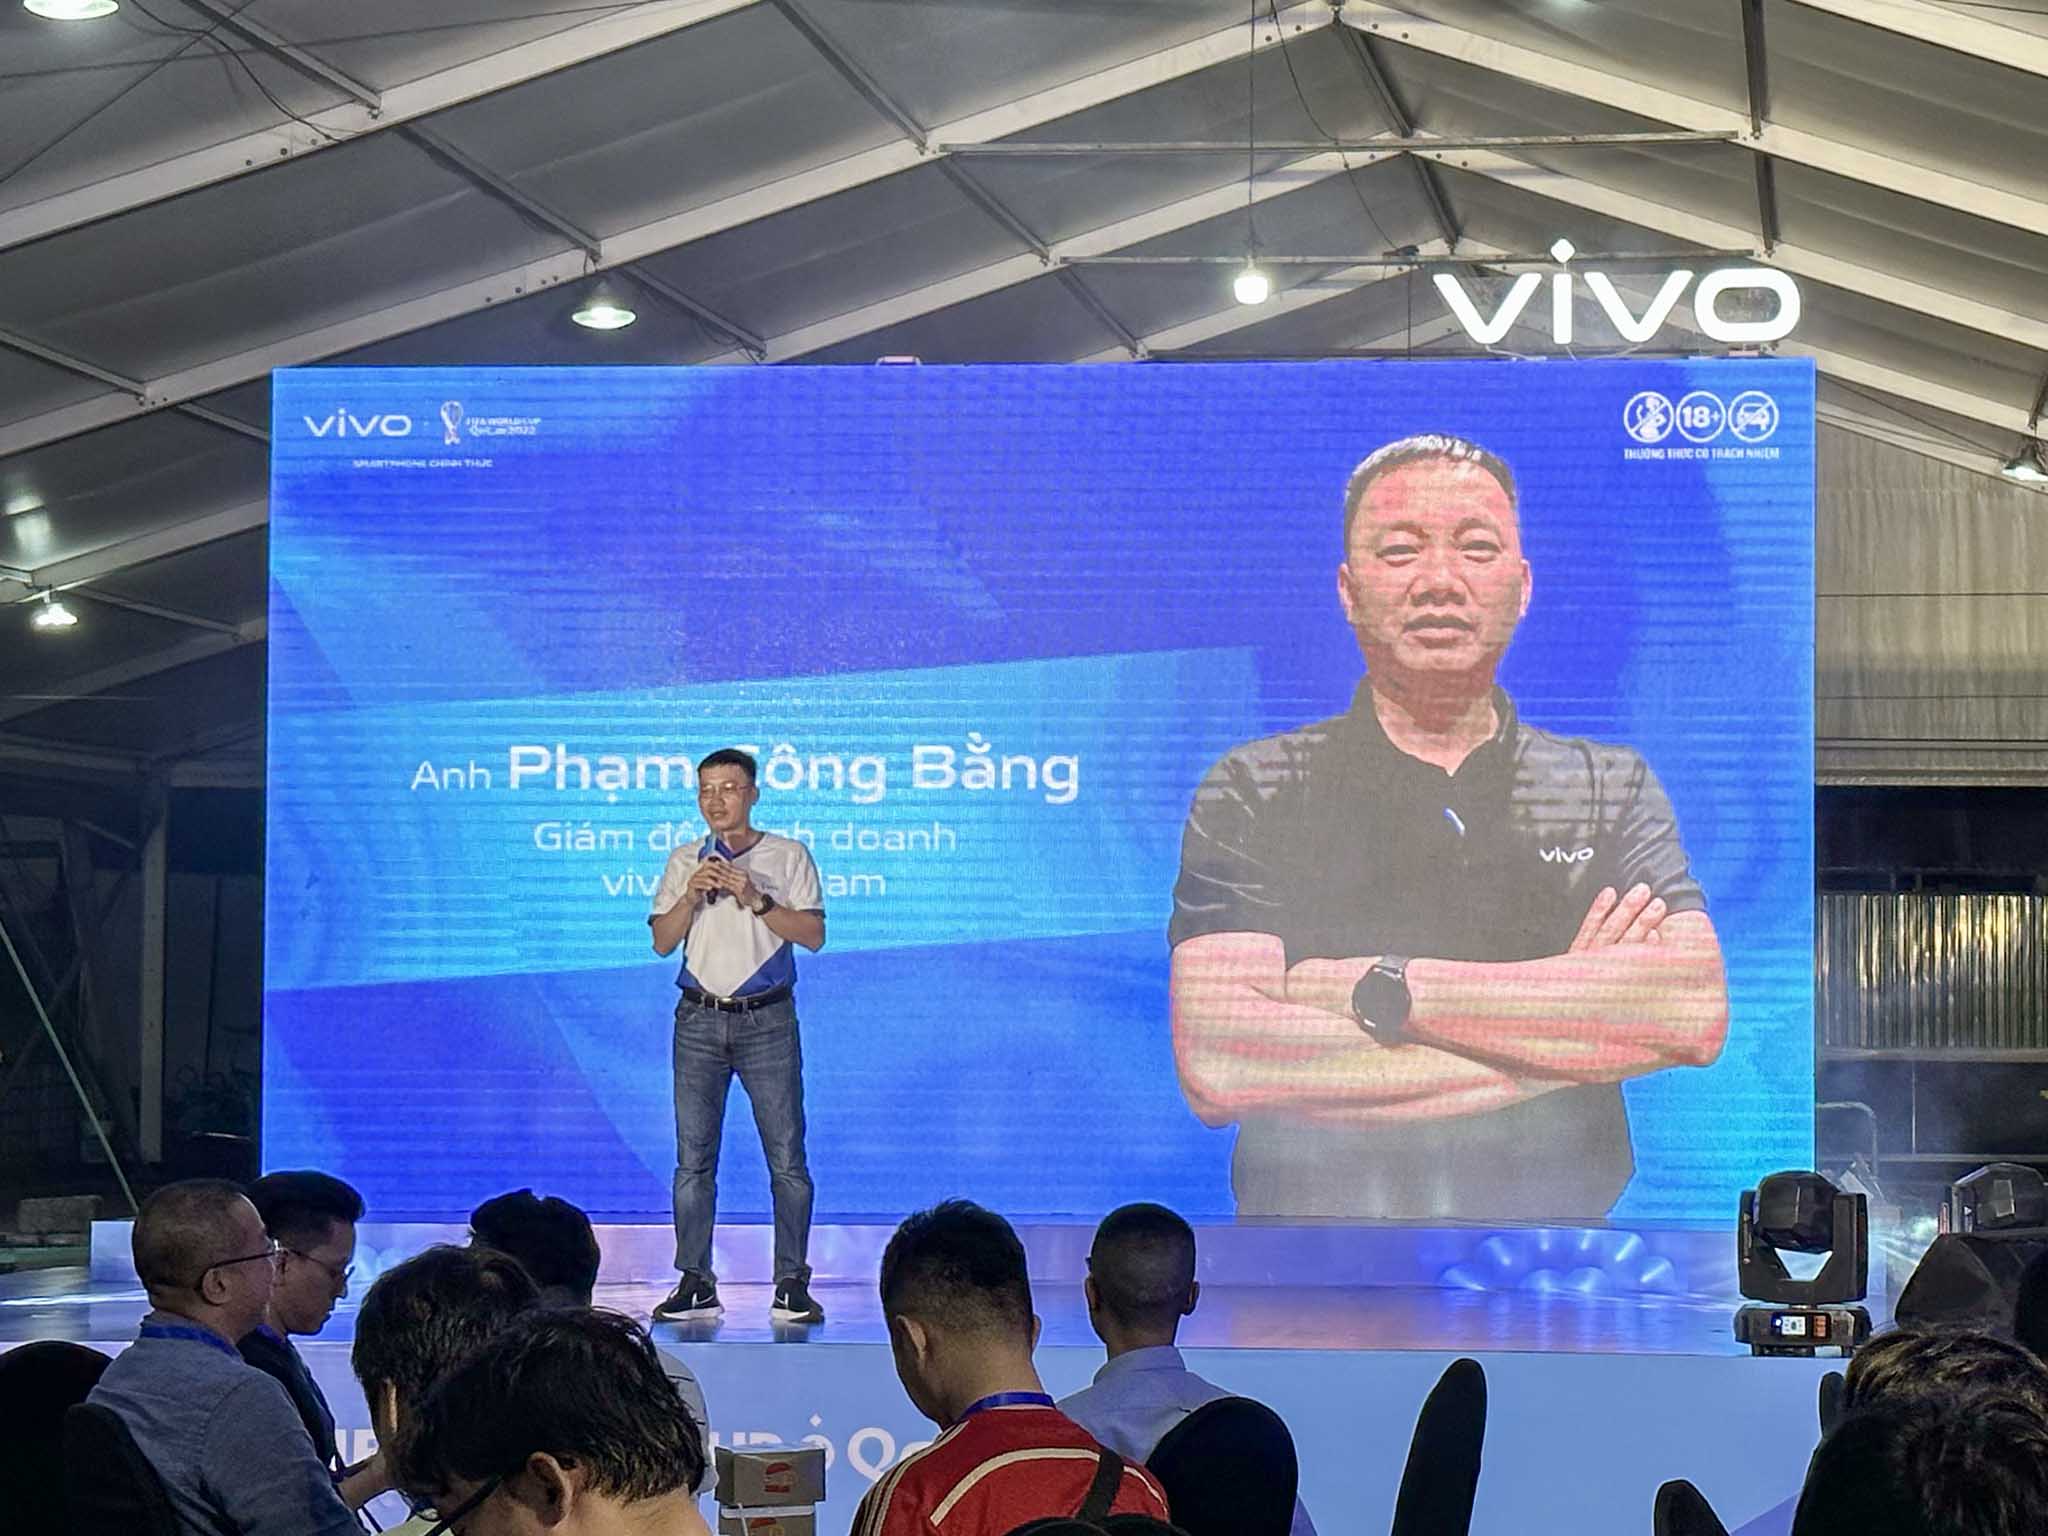 Vivo tổ chức sự kiện xem bóng đá “Shoot Bật Chất Cool – Cuốn Cùng World Cup” kết nối hàng ngàn người yêu công nghệ và fan hâm mộ bóng đá